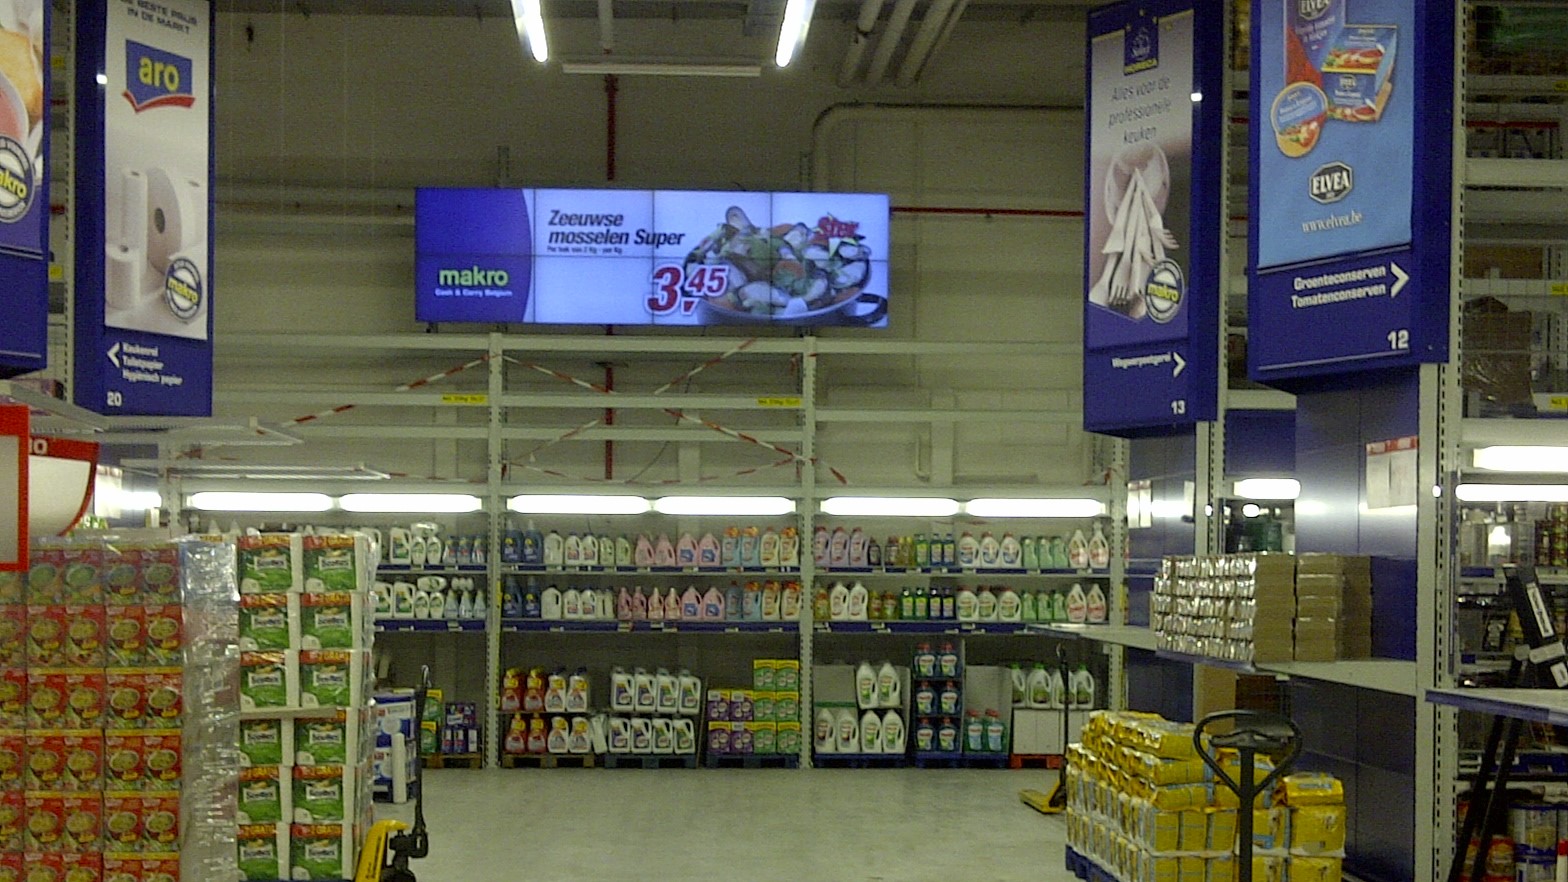 Supermarket Digital Signage